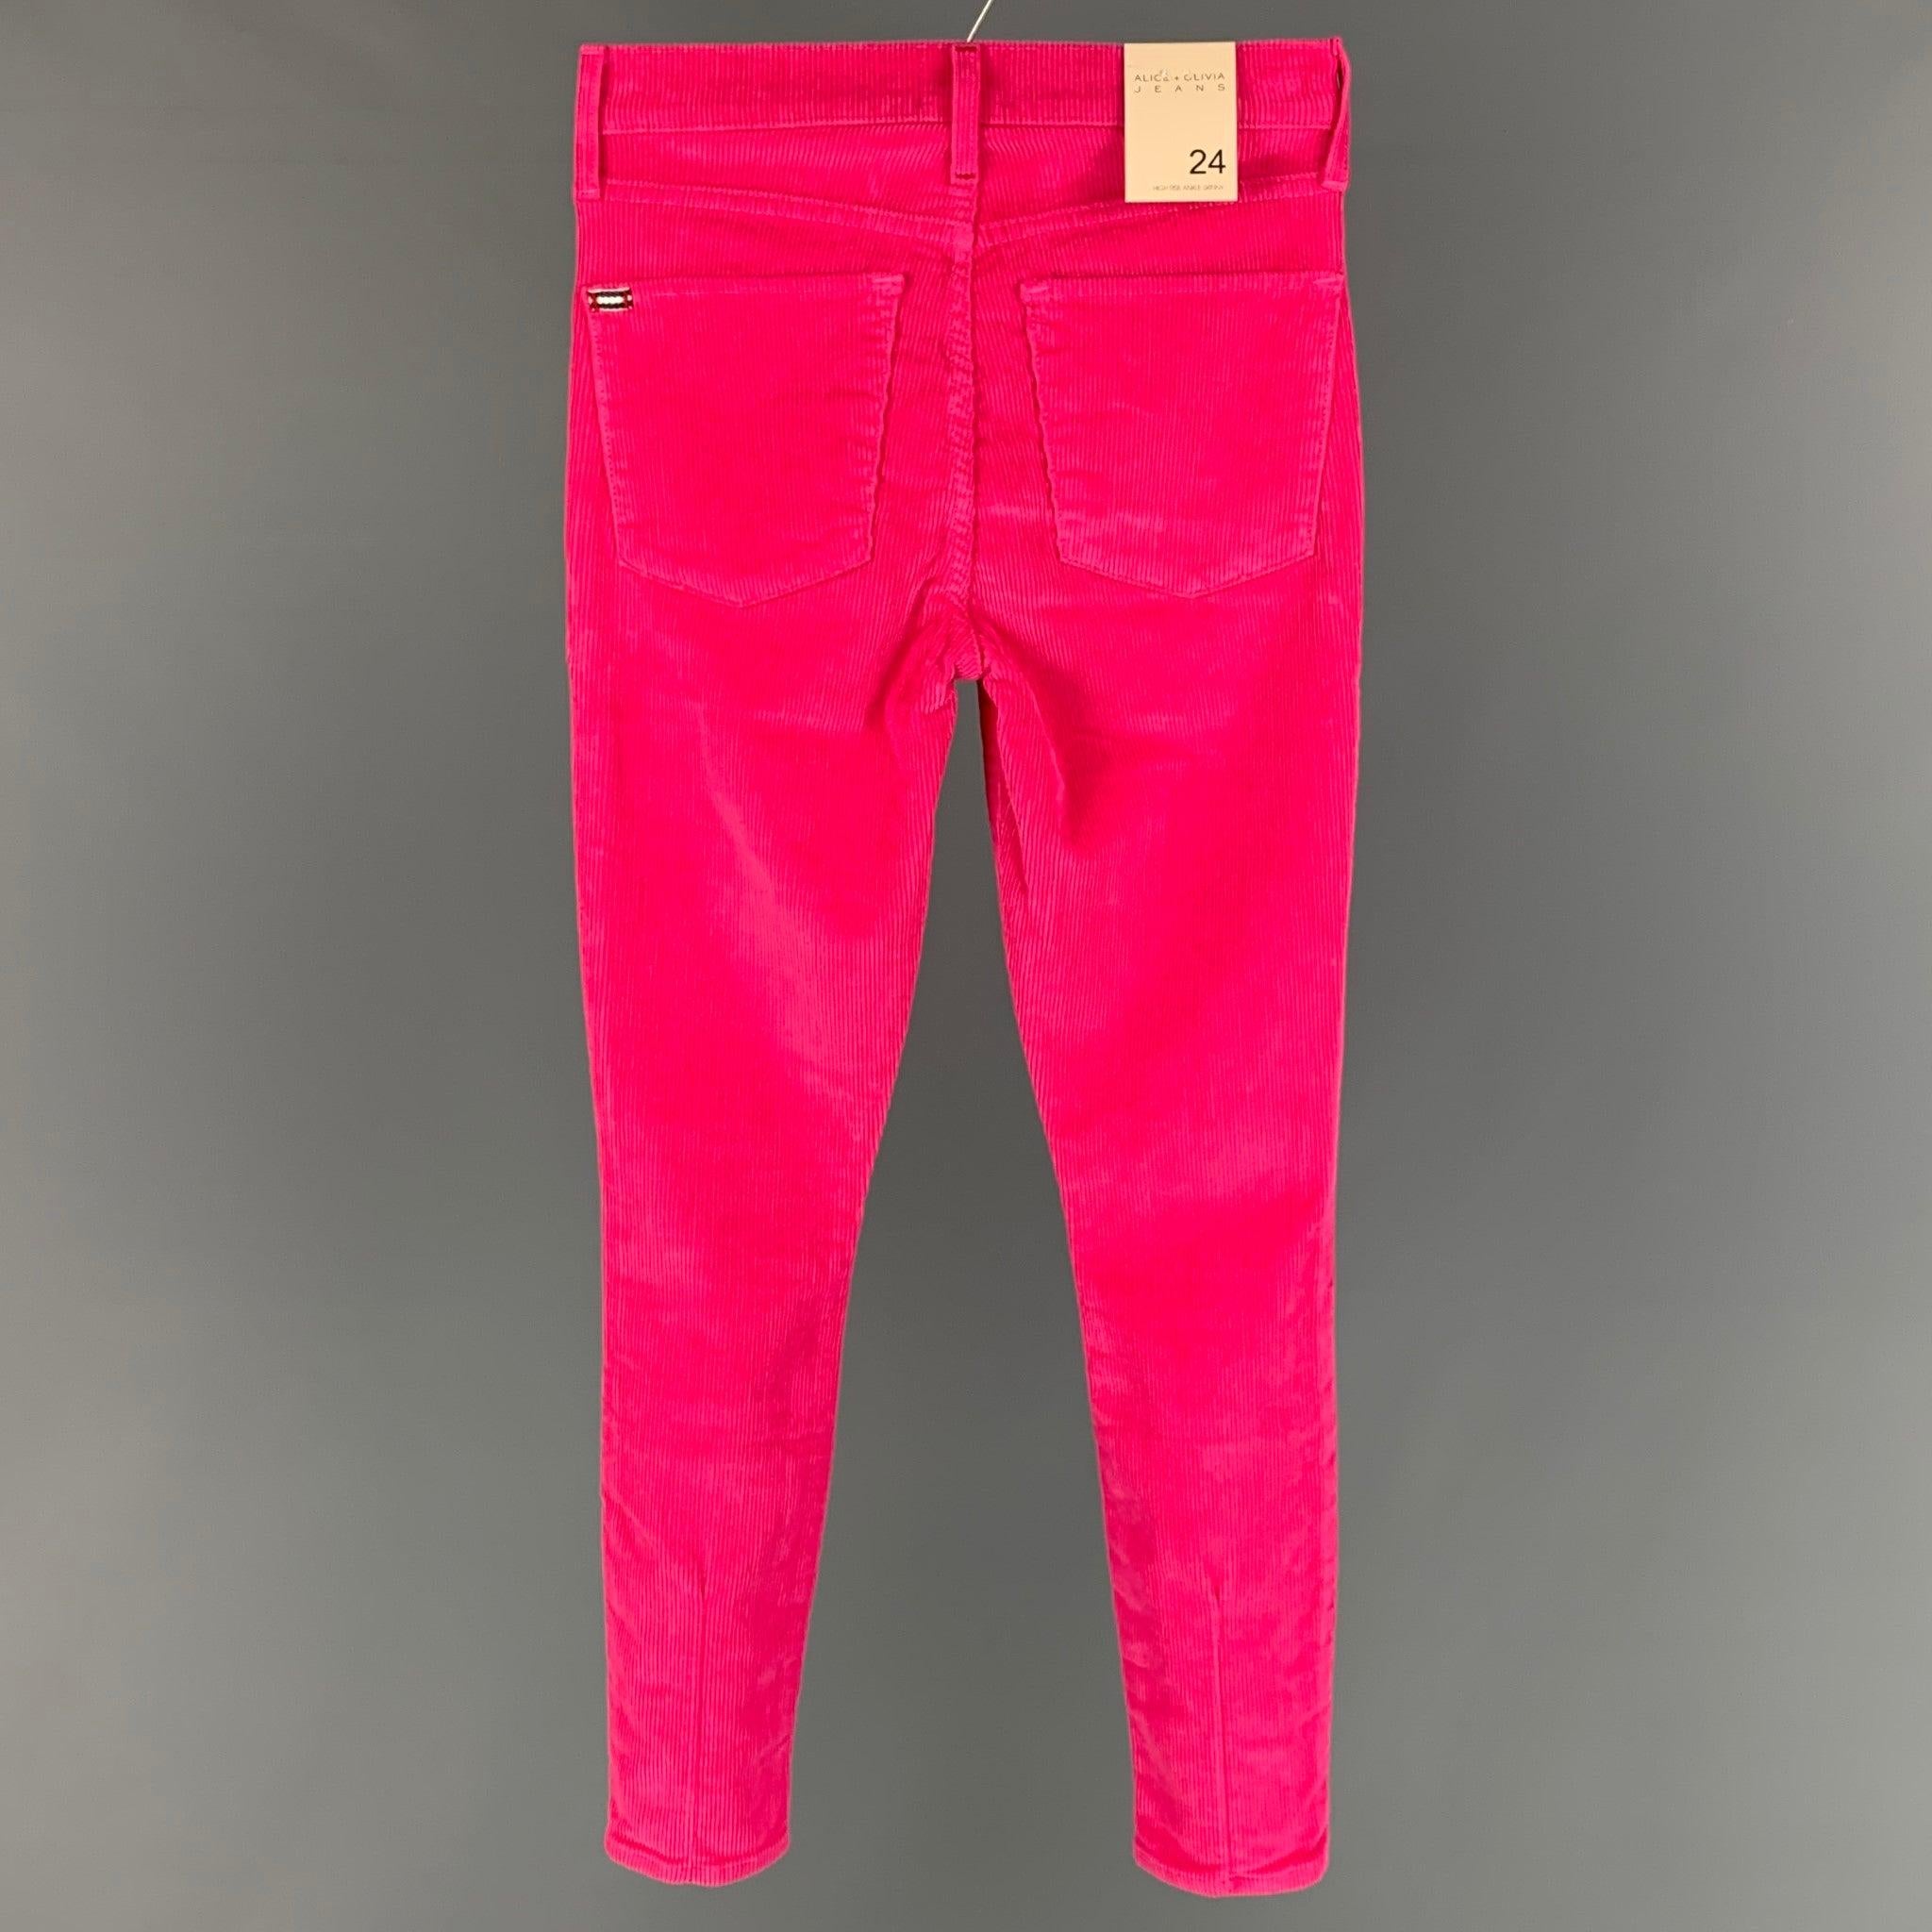 Le pantalon décontracté ALICE + OLIVIA est réalisé en velours côtelé de coton rose et présente une coupe jean, une coupe skinny et une fermeture zippée à la braguette. Fabriqué aux Etats-Unis. Nouveau avec étiquettes.  

Marqué :   24 

Mesures : 
 